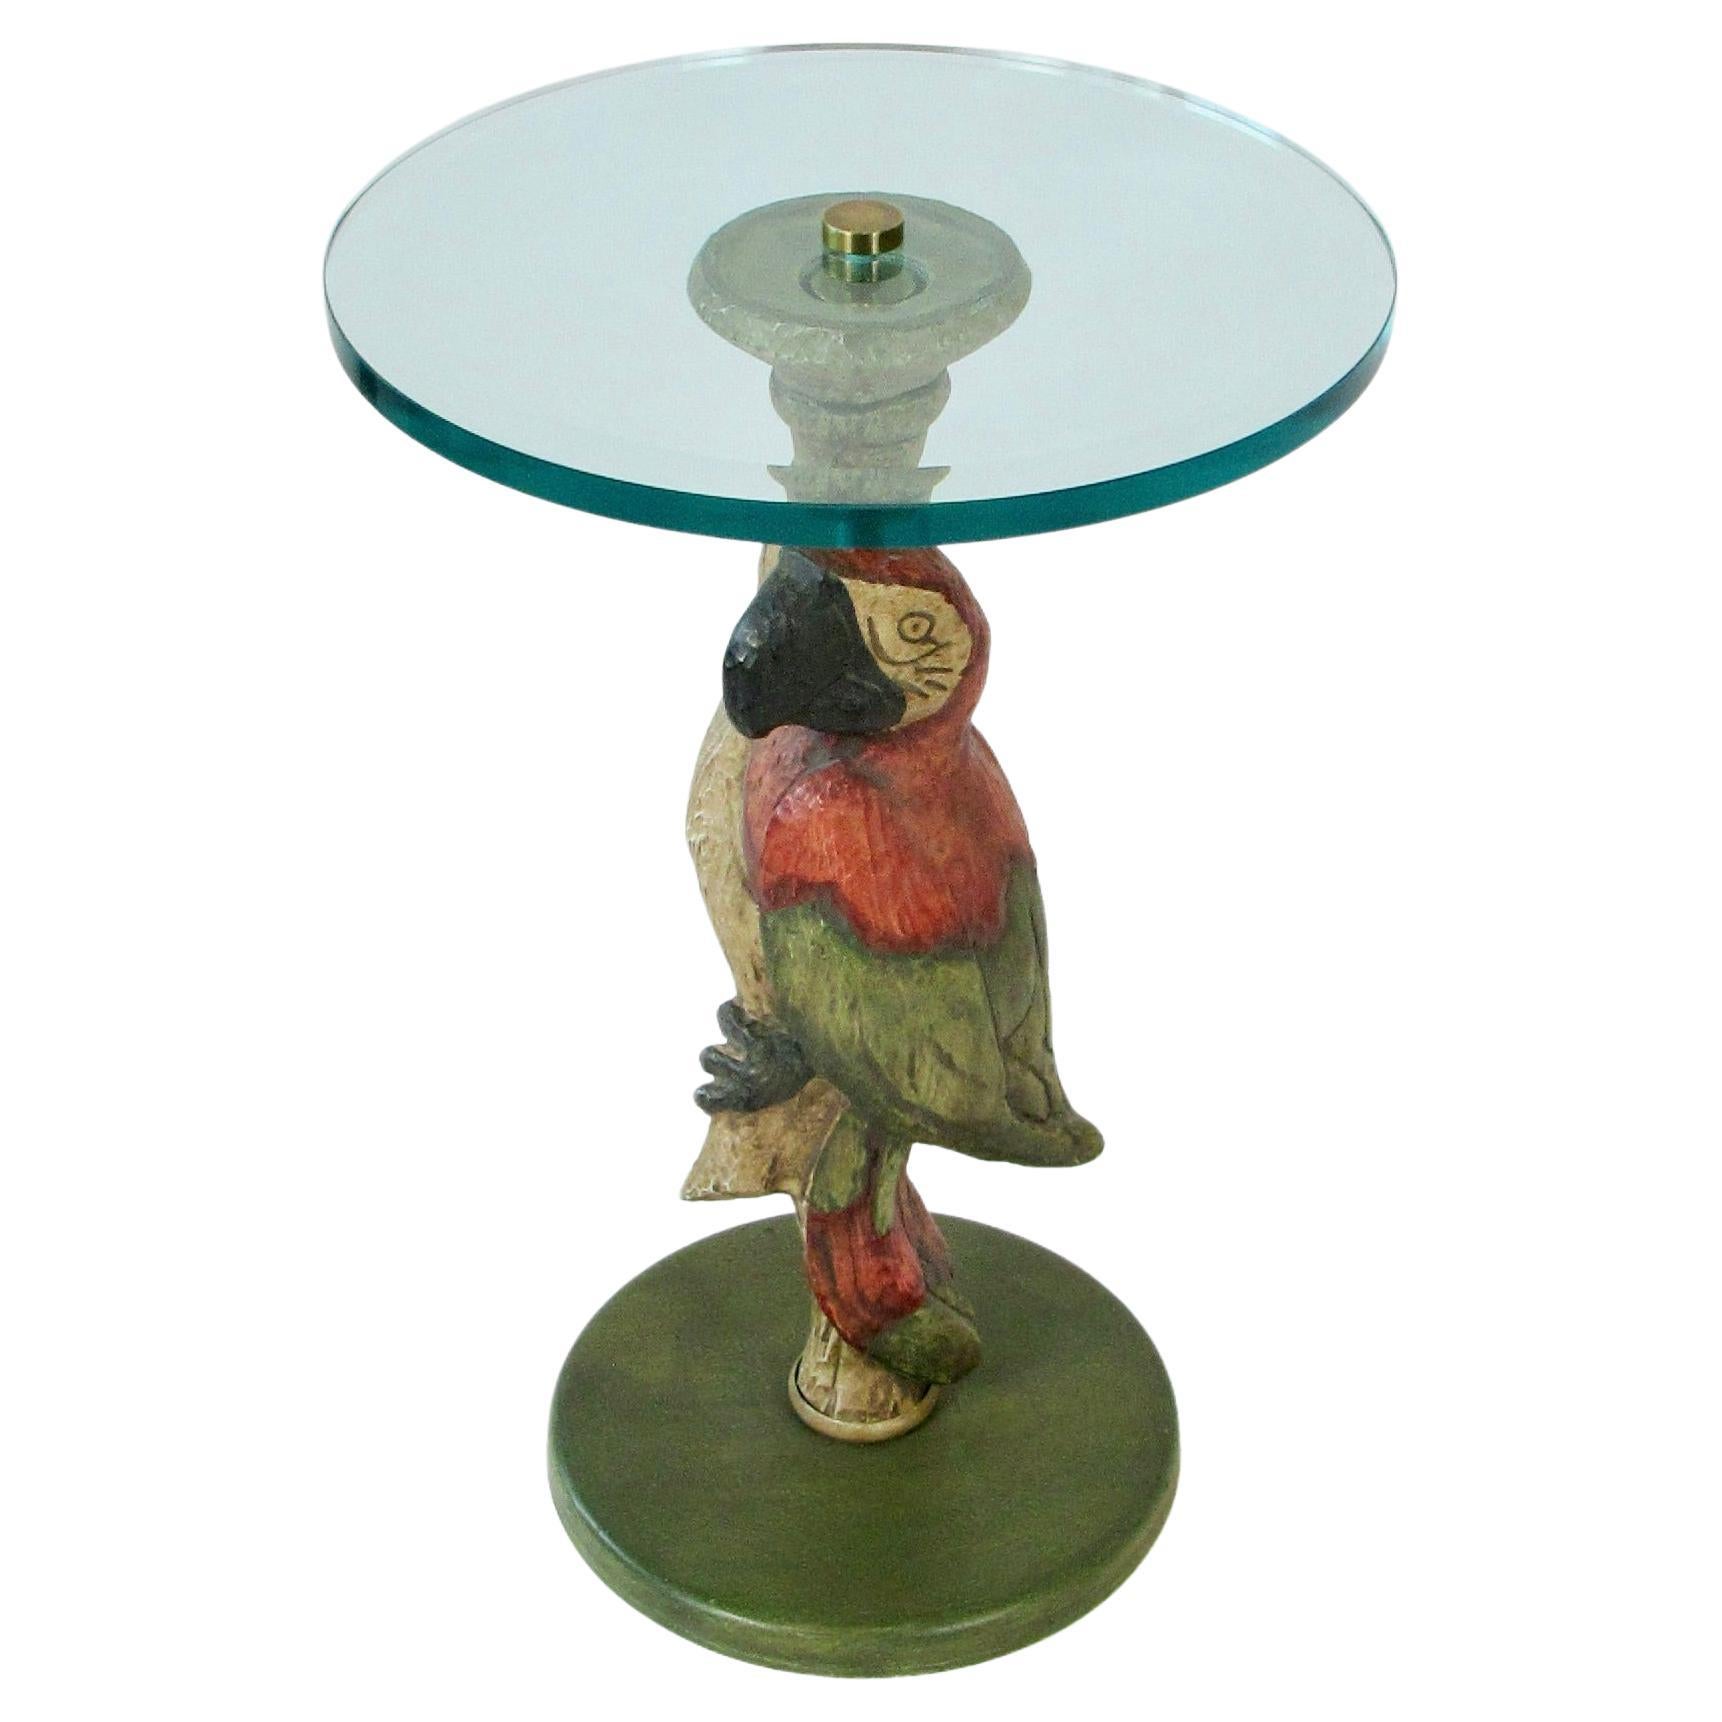 Polly Want a Table Whimsical, verre biseauté sur base de perroquet, style Maitland Smith